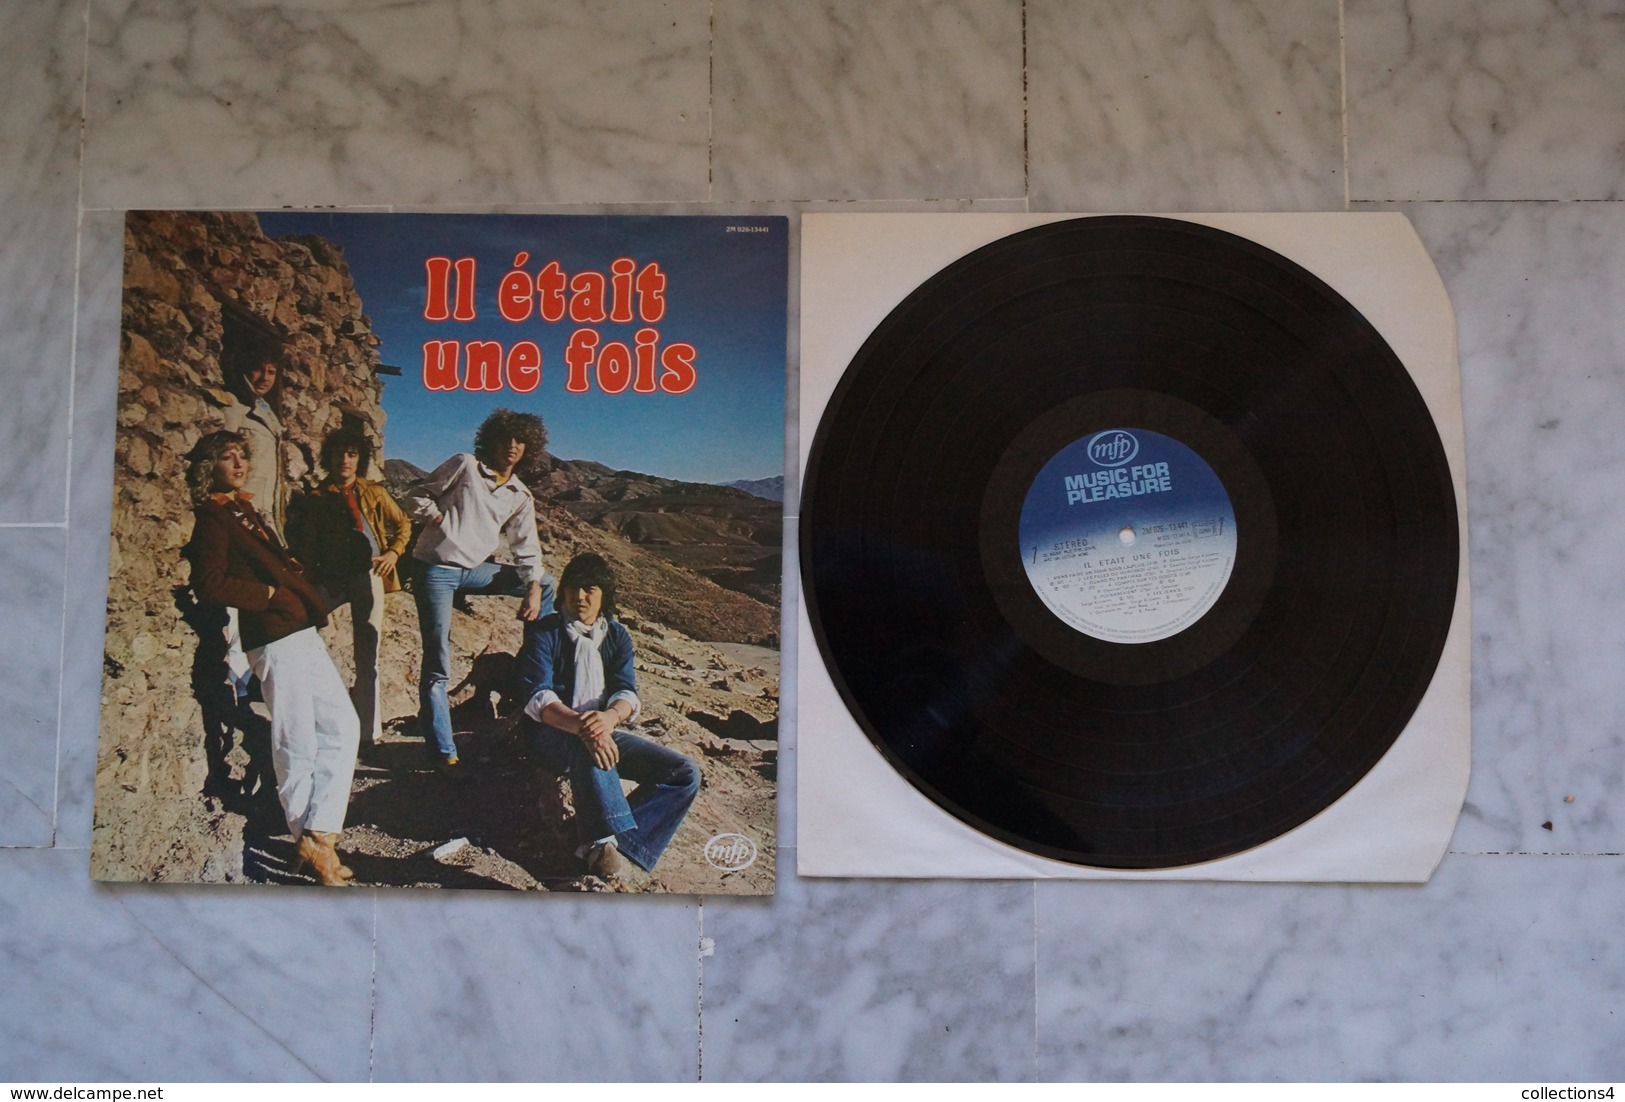 IL ETAIT UNE FOIS LP 1979 POLNAREFF - Other - French Music